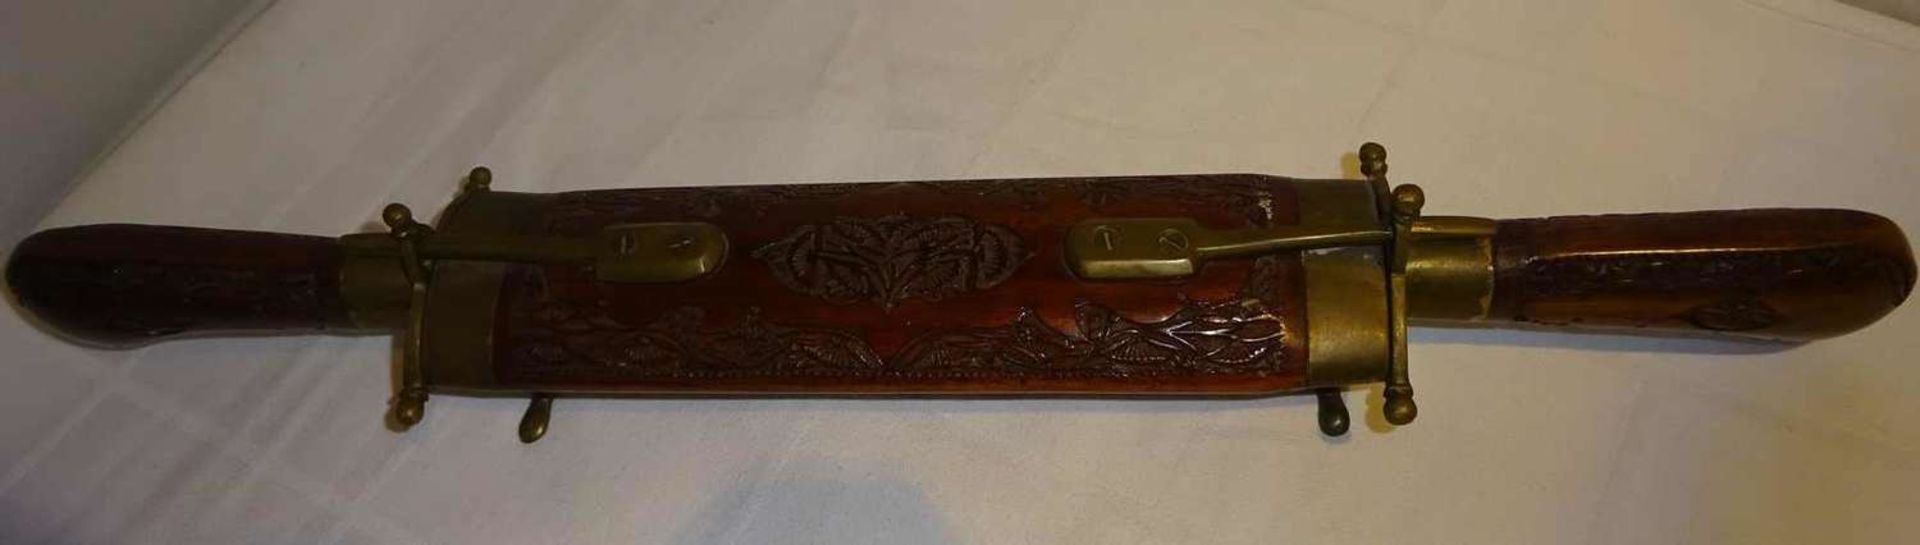 handgearbeitetes Tranchierbesteck, Messing/Holz. Indien, sehr guter Zustand. Länge ca. 43 cm